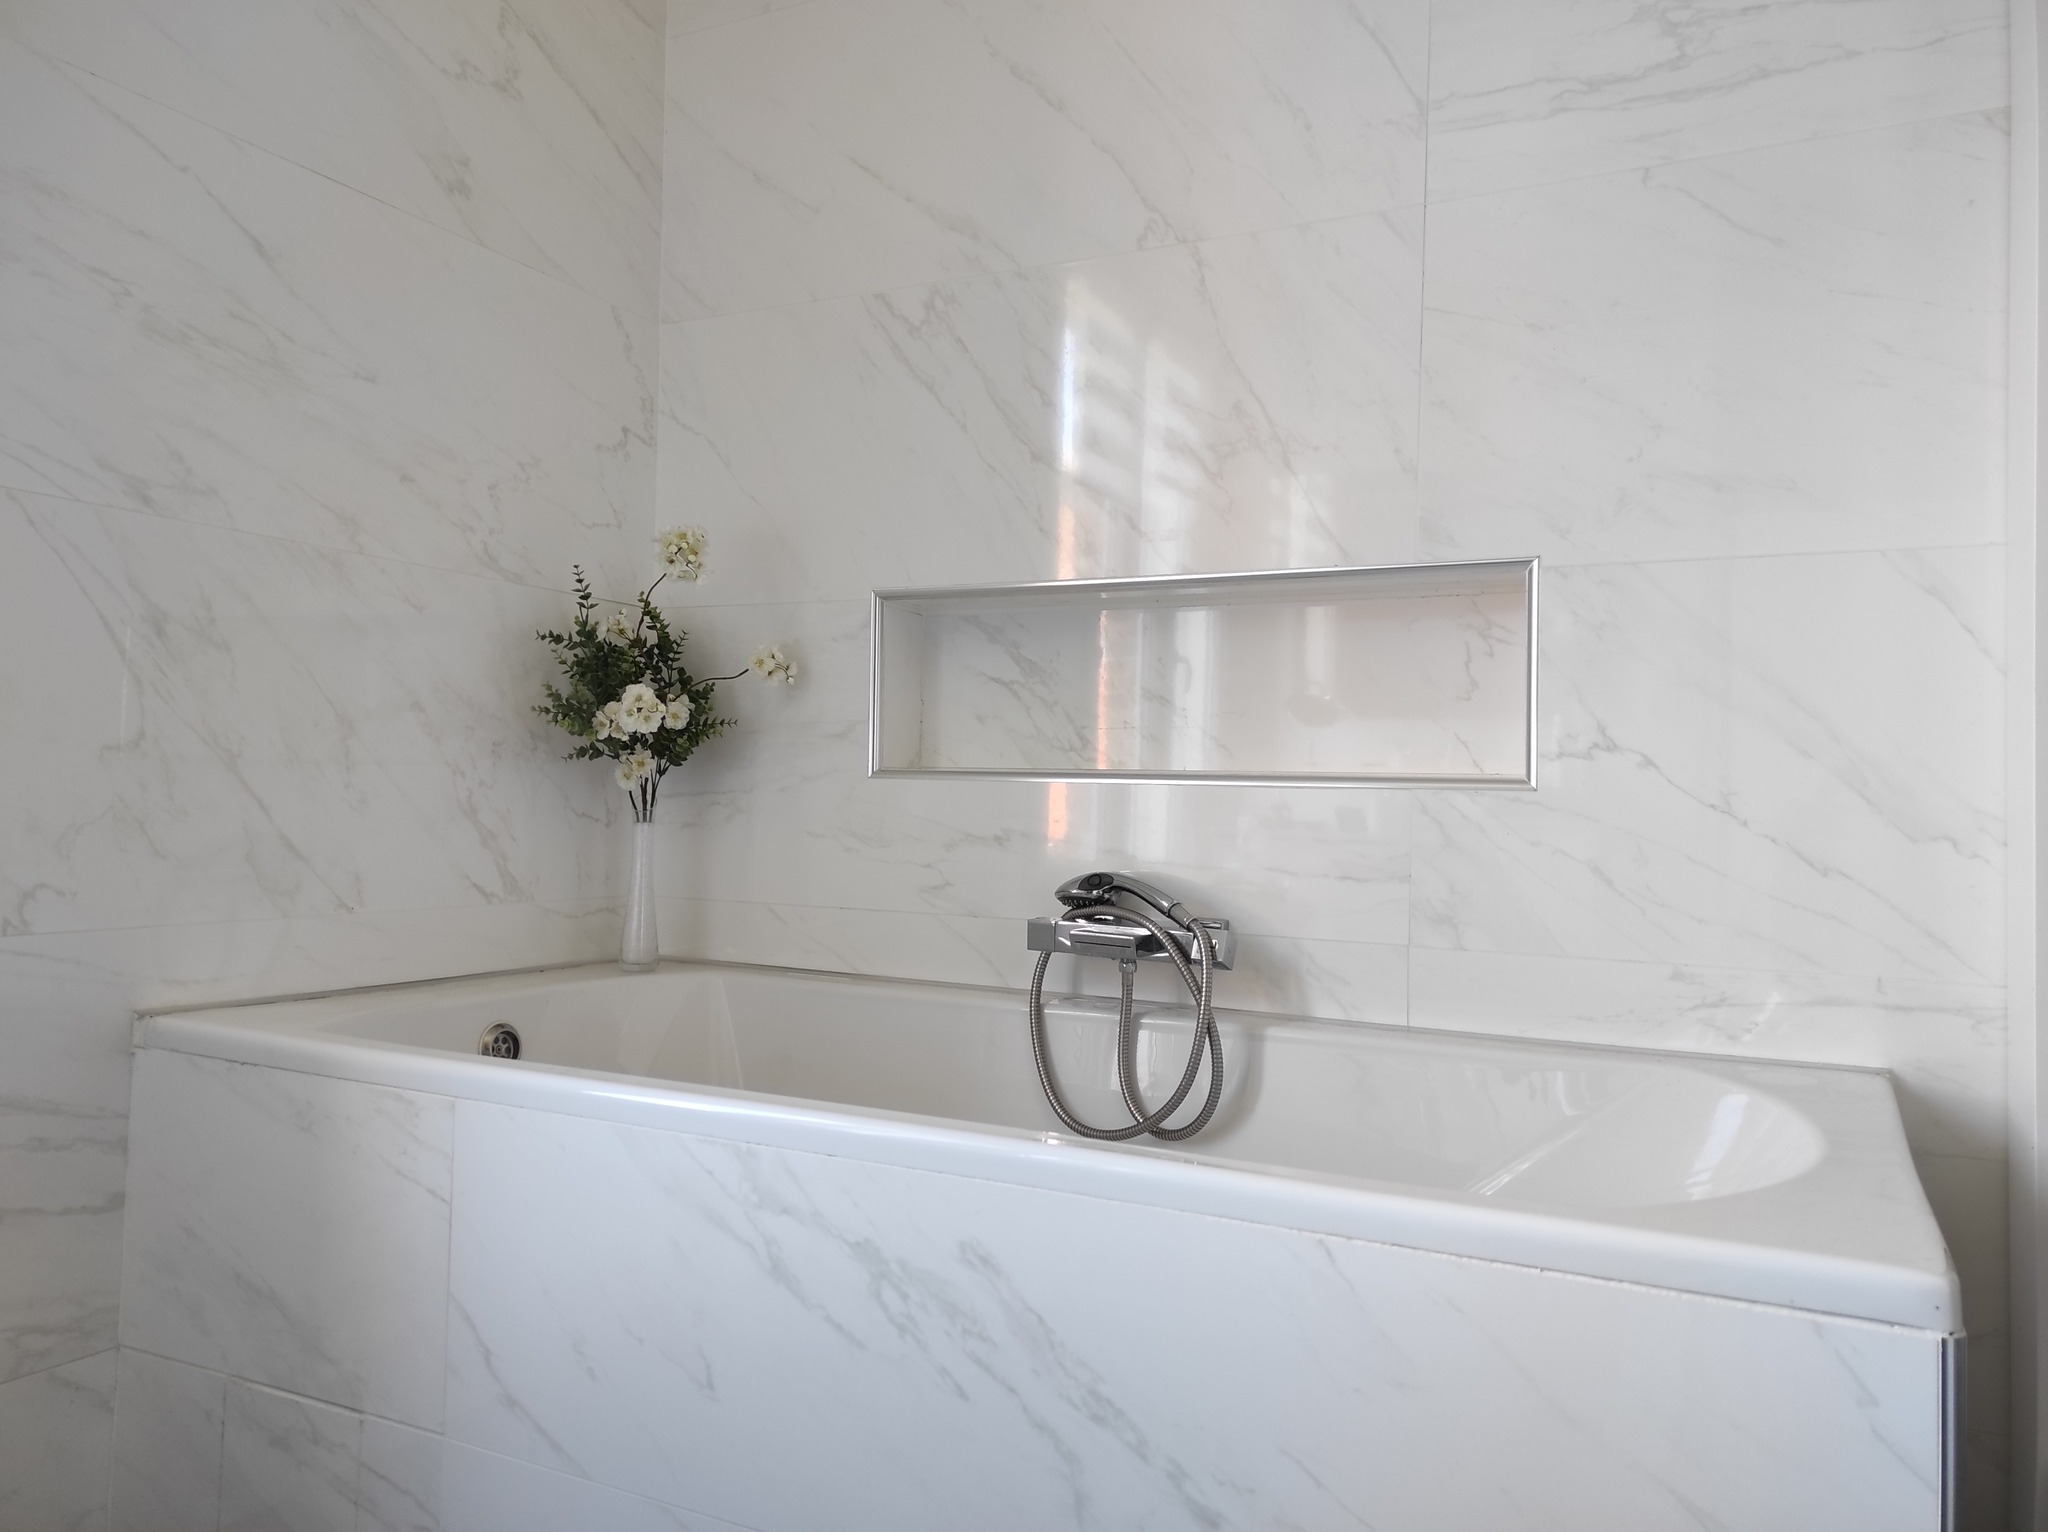 Salle de bains et baignoire imitation marbre blanc